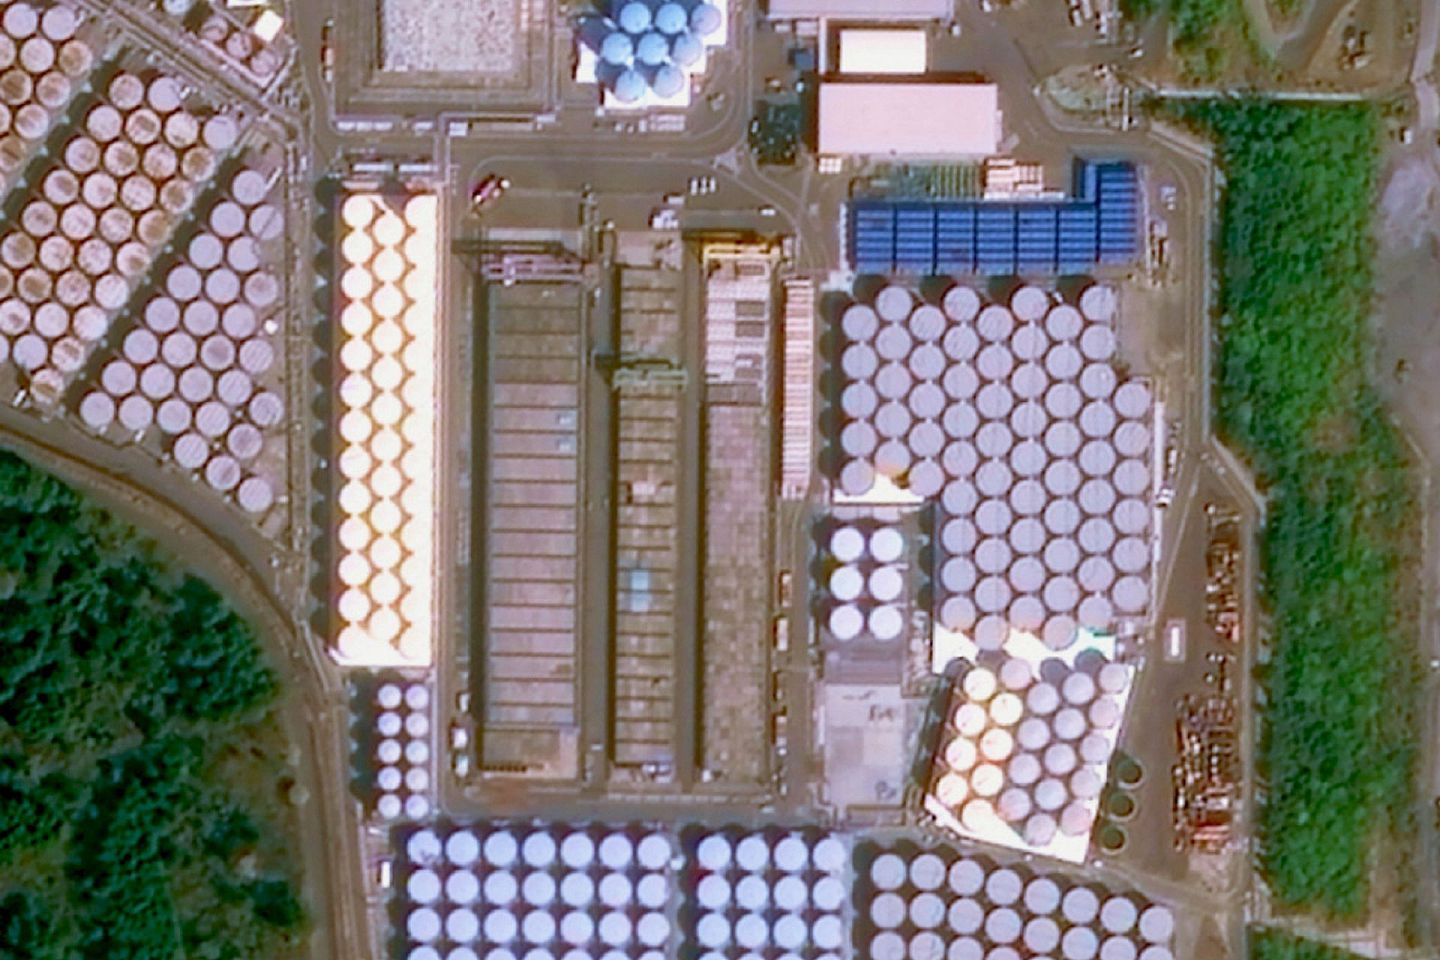 中国卫星企业拍摄福岛核电站核废水储存区。图为储存区内存在大量的储存罐。（微博＠长光卫星）